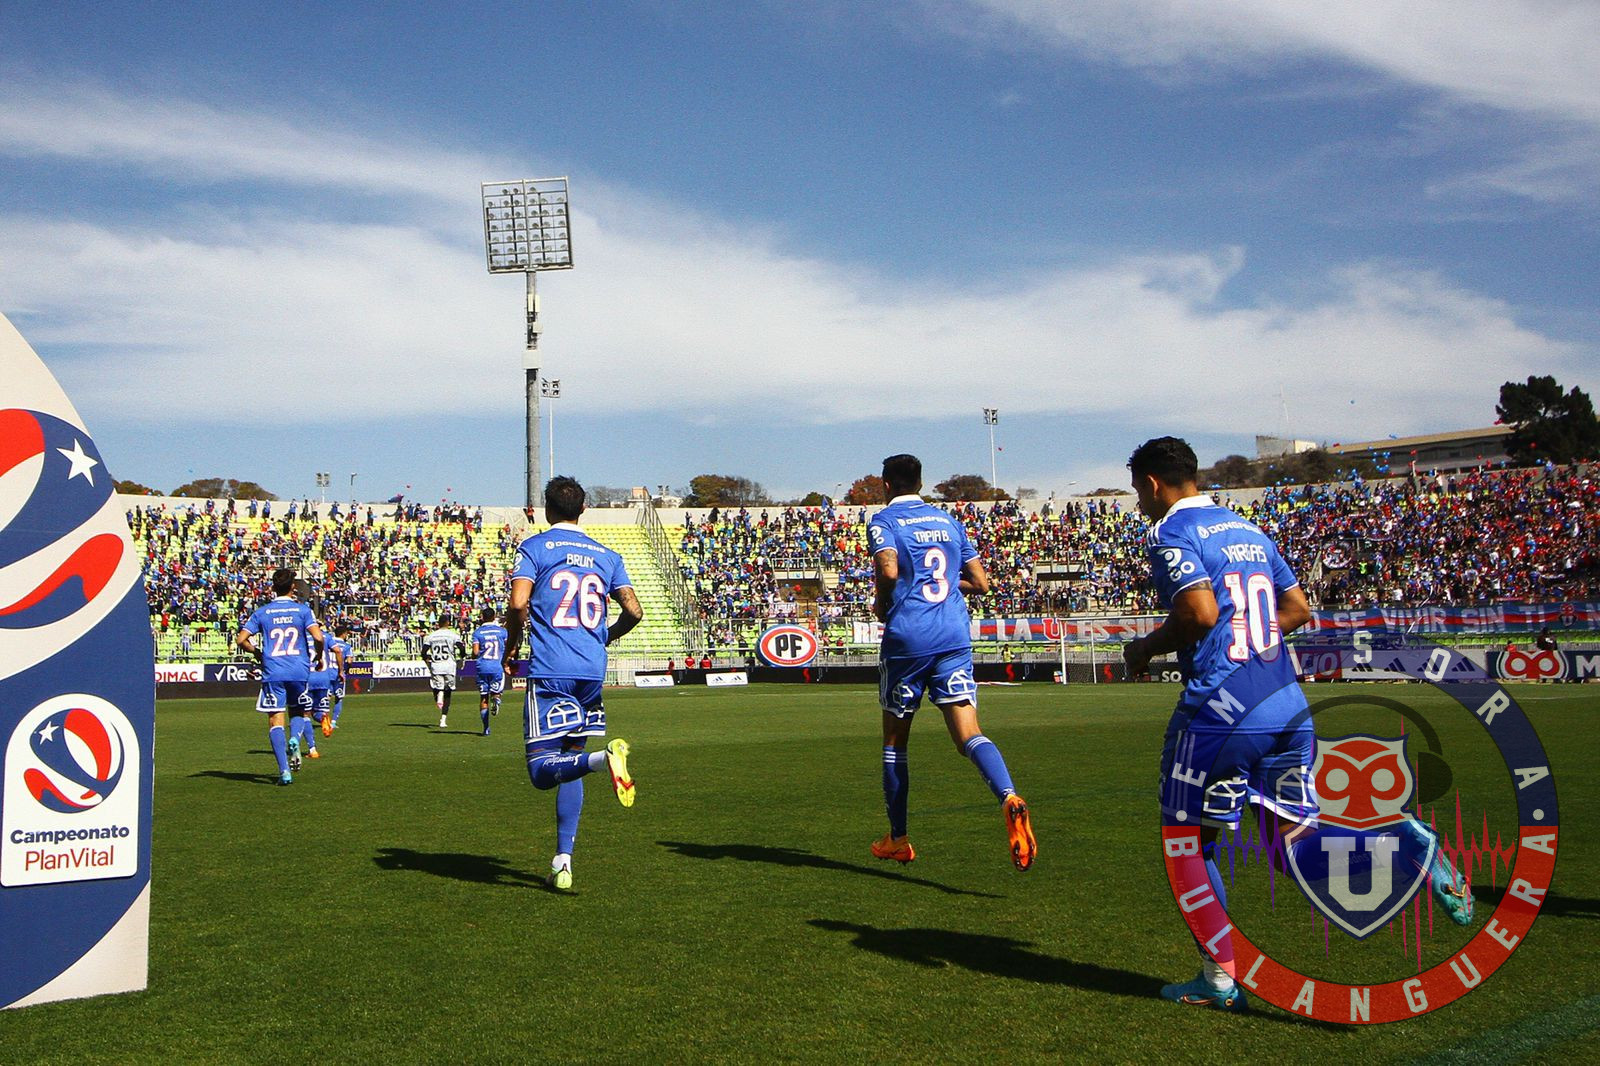 Para evitar incidentes: Estadio Seguro recomendó adelantar el horario del partido entre la U y Coquimbo en Valparaíso